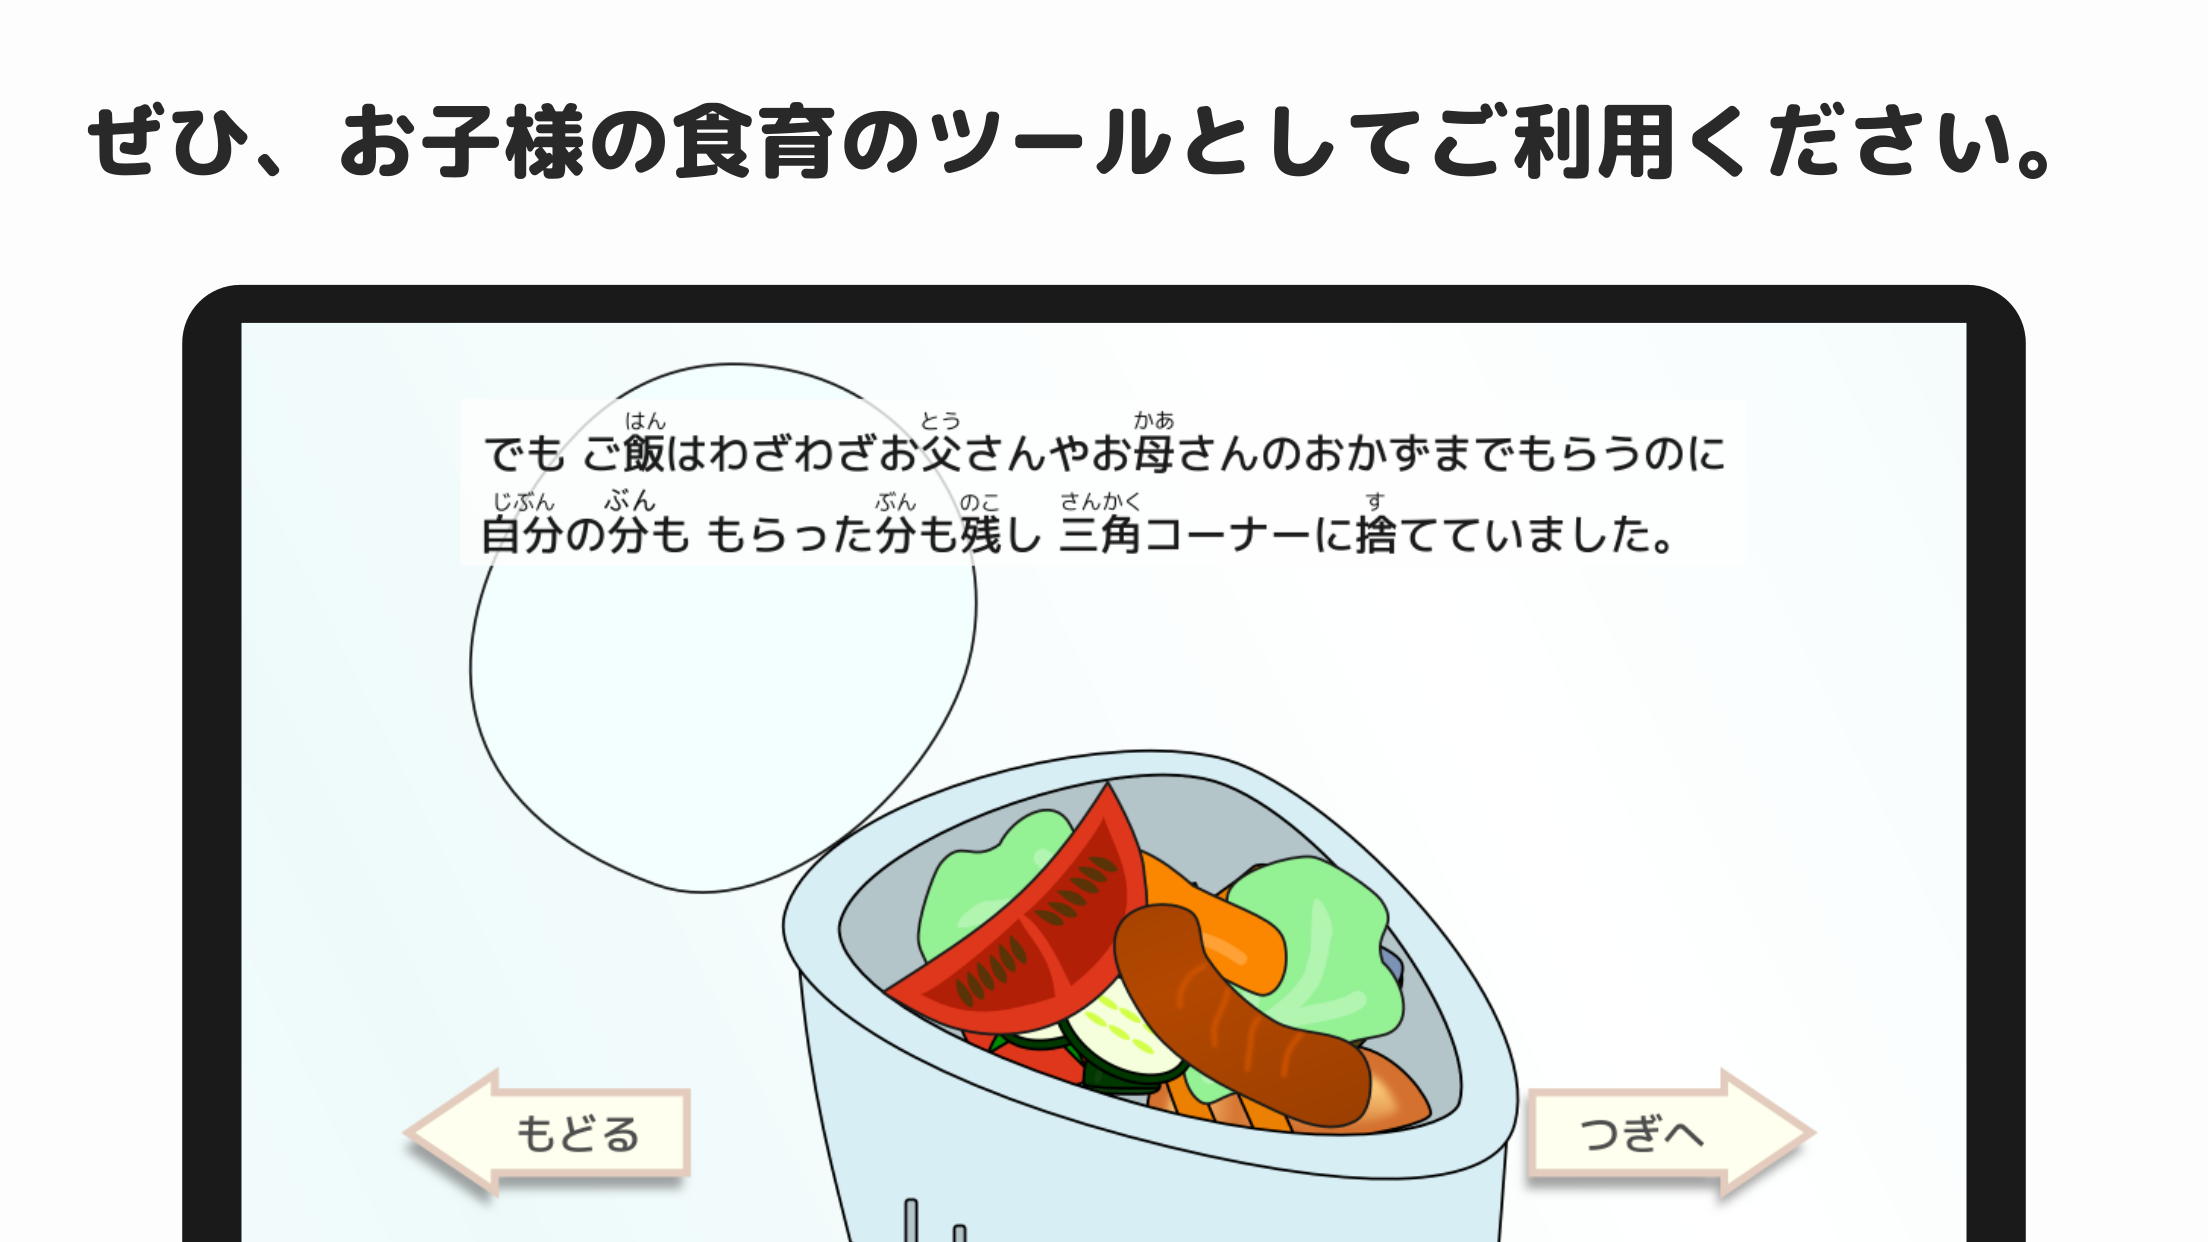 みゆちゃんのたべのこし スクリーンショット2 ぜひ、お子様の食育のツールとしてご利用ください。